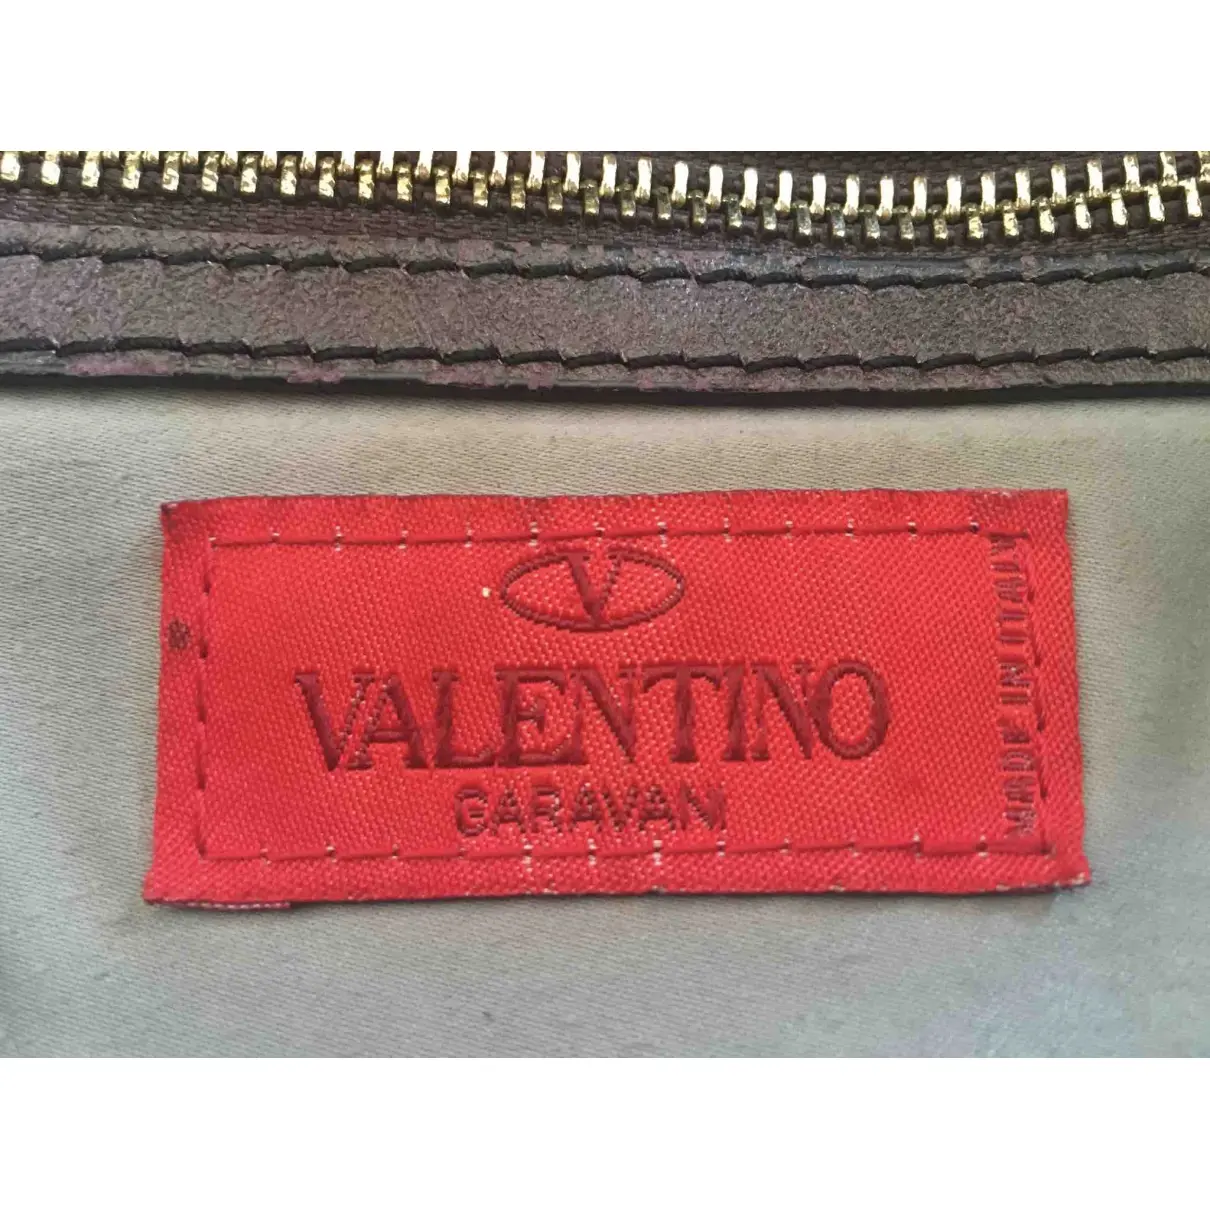 Handbag Valentino Garavani - Vintage